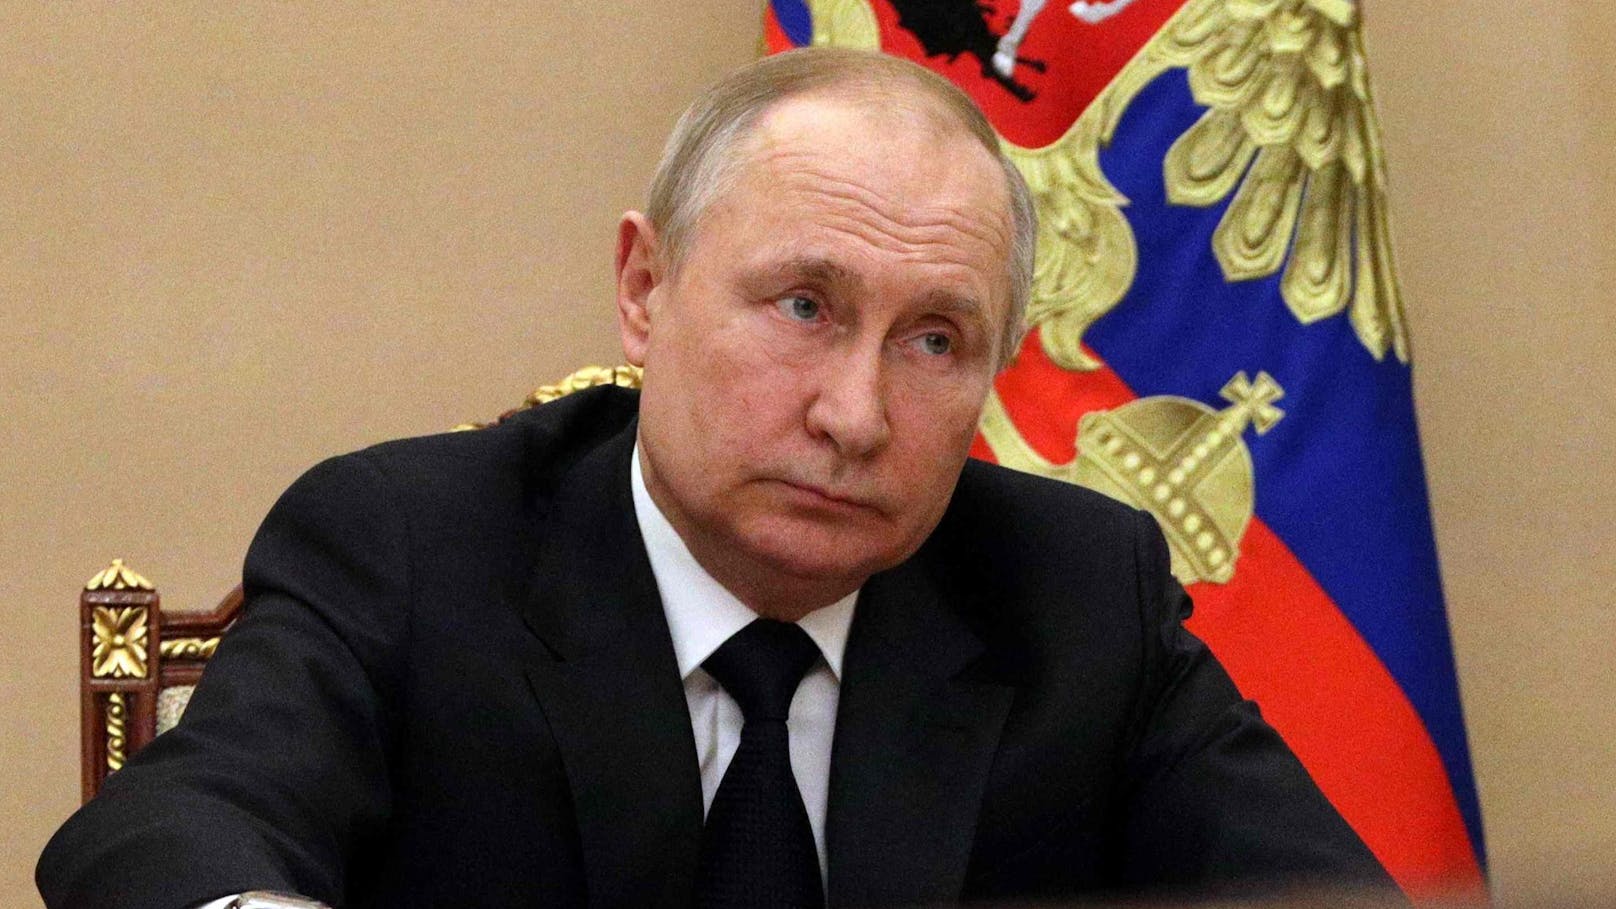 Neue Gerüchte um den russischen Präsidenten Wladimir Putin: Er soll an Krebs leiden.&nbsp;